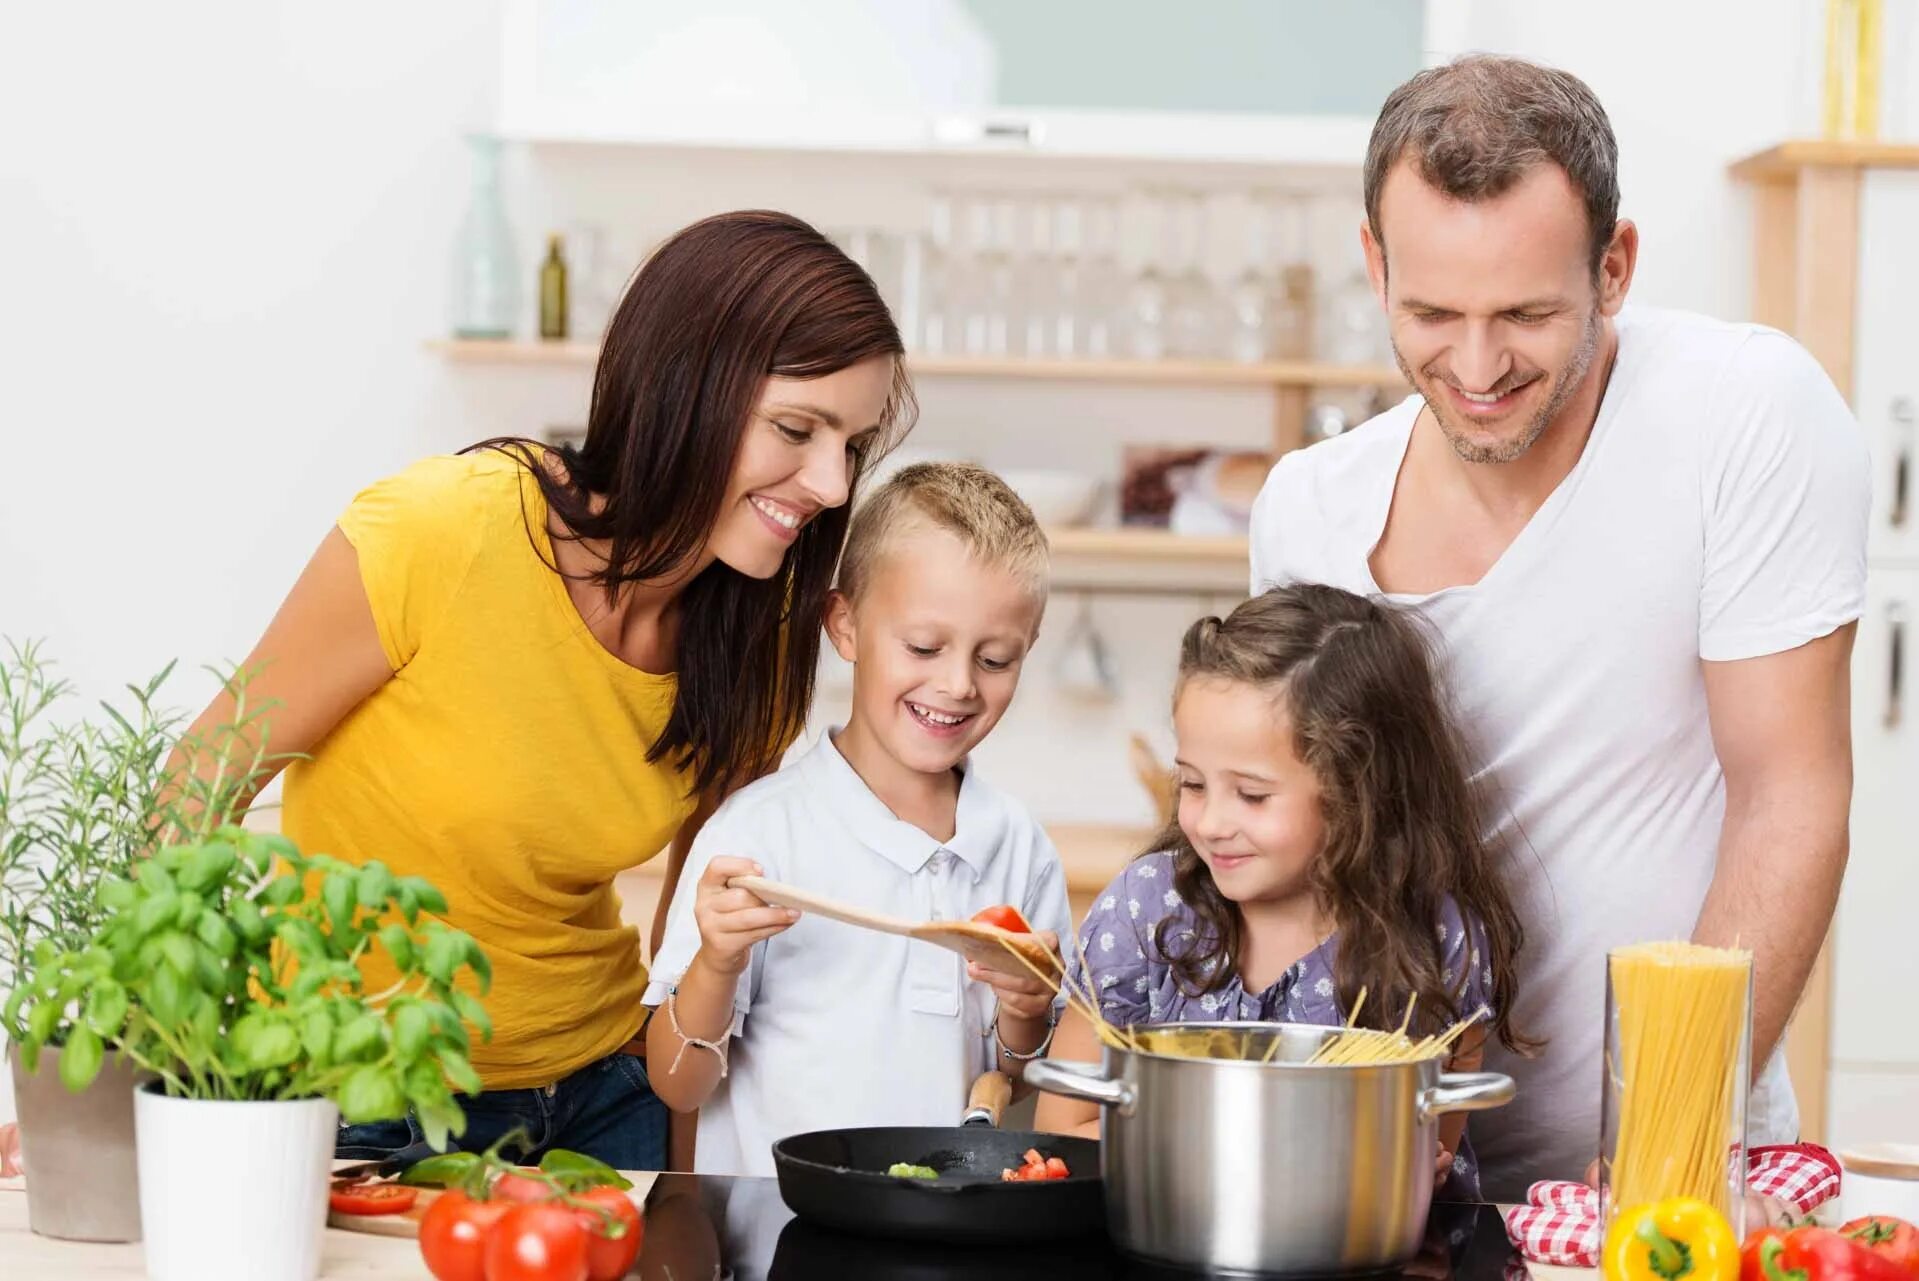 Бытовых забот. Счастливая семья на кухне. Семья и быт. Родители с детьми го овят. Семья кухня обед.